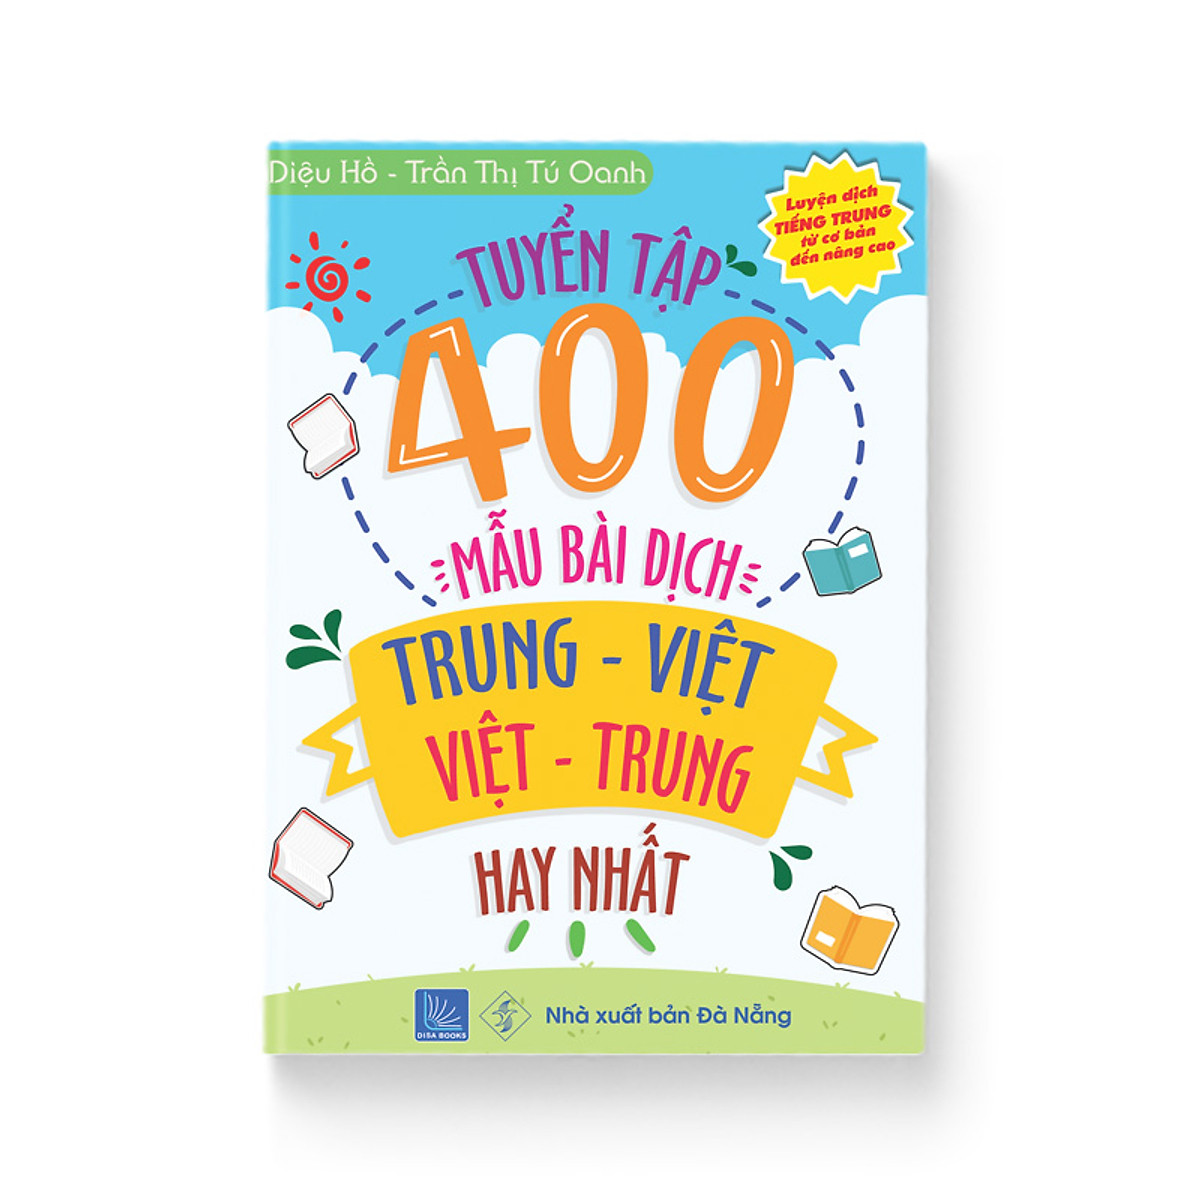 Sách-Tuyển tập 400 mẫu bài dịch Trung - Việt hay nhất (Song ngữ Trung – Việt, có Audio nghe)